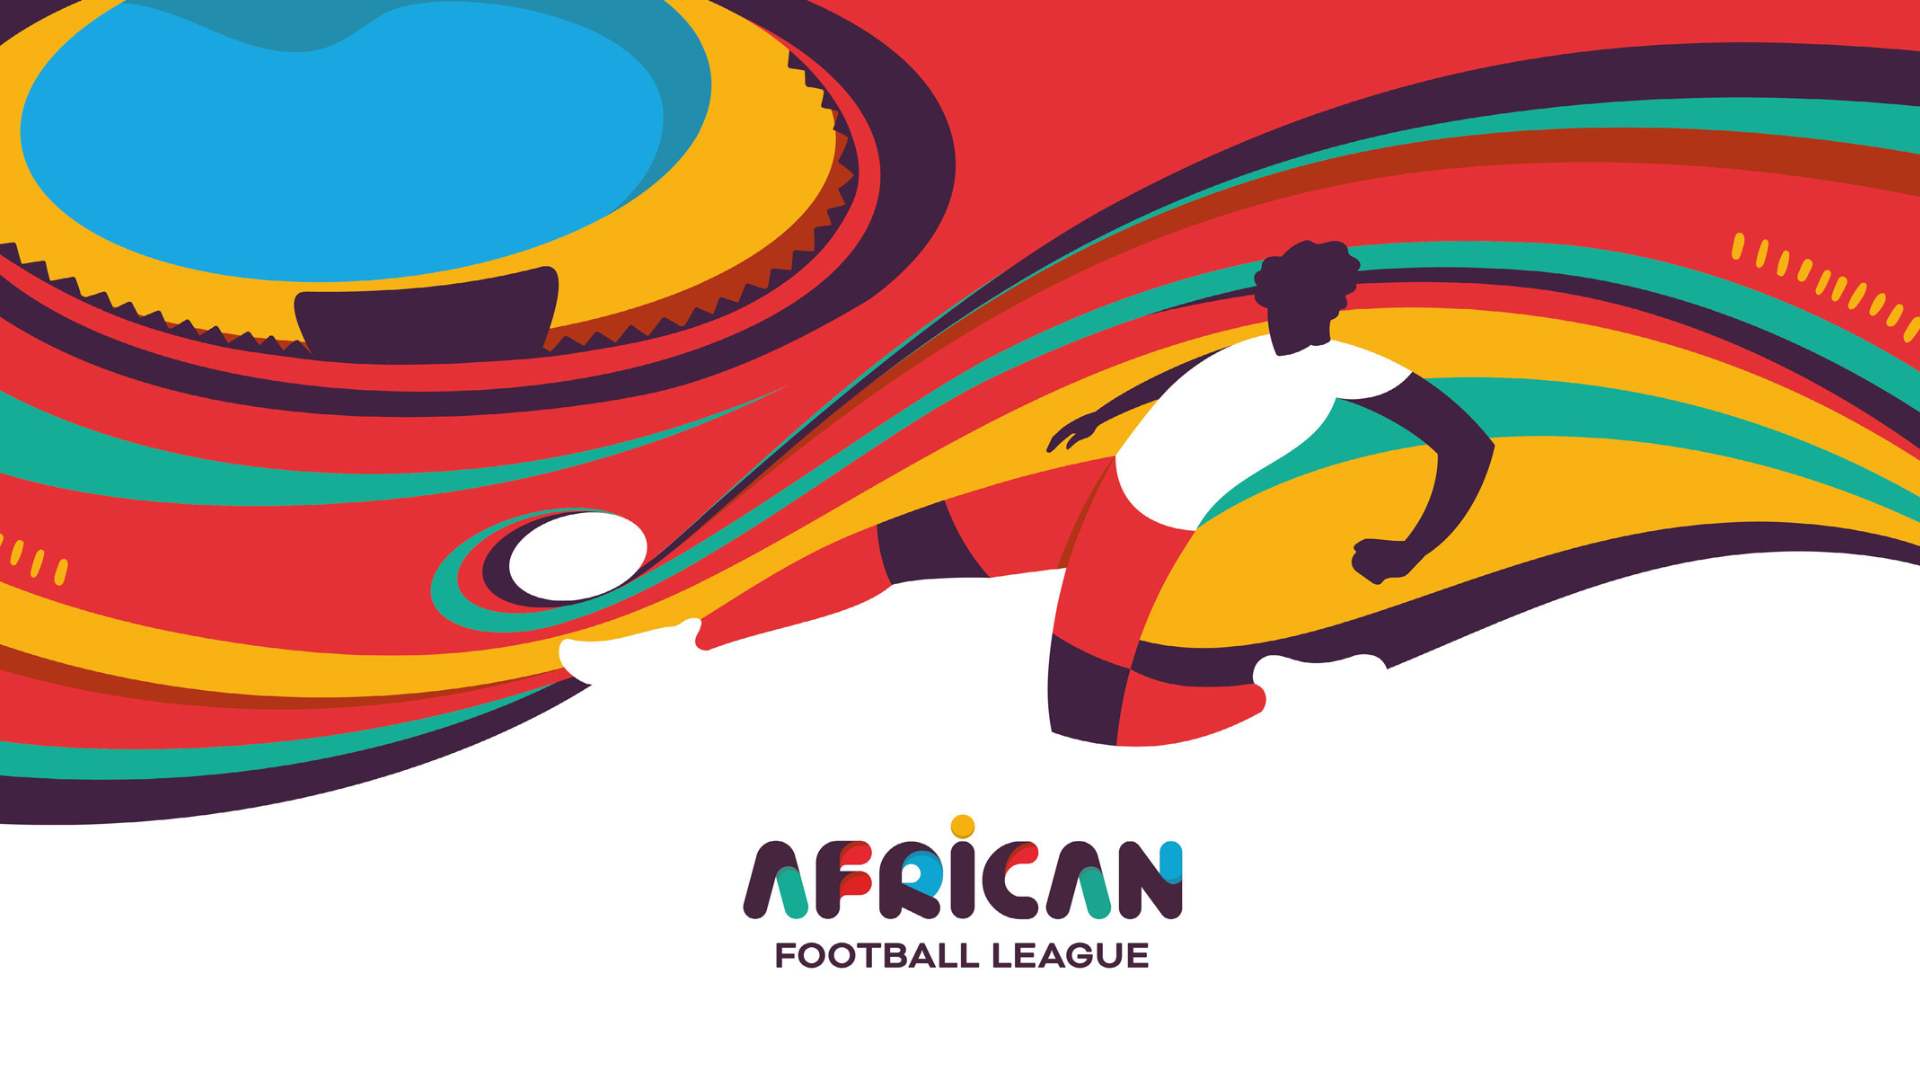 «Африканская футбольная лига» изо всех сил пытается добиться успеха, насчитывая всего 8 команд, поскольку проект Суперлиги испаряется